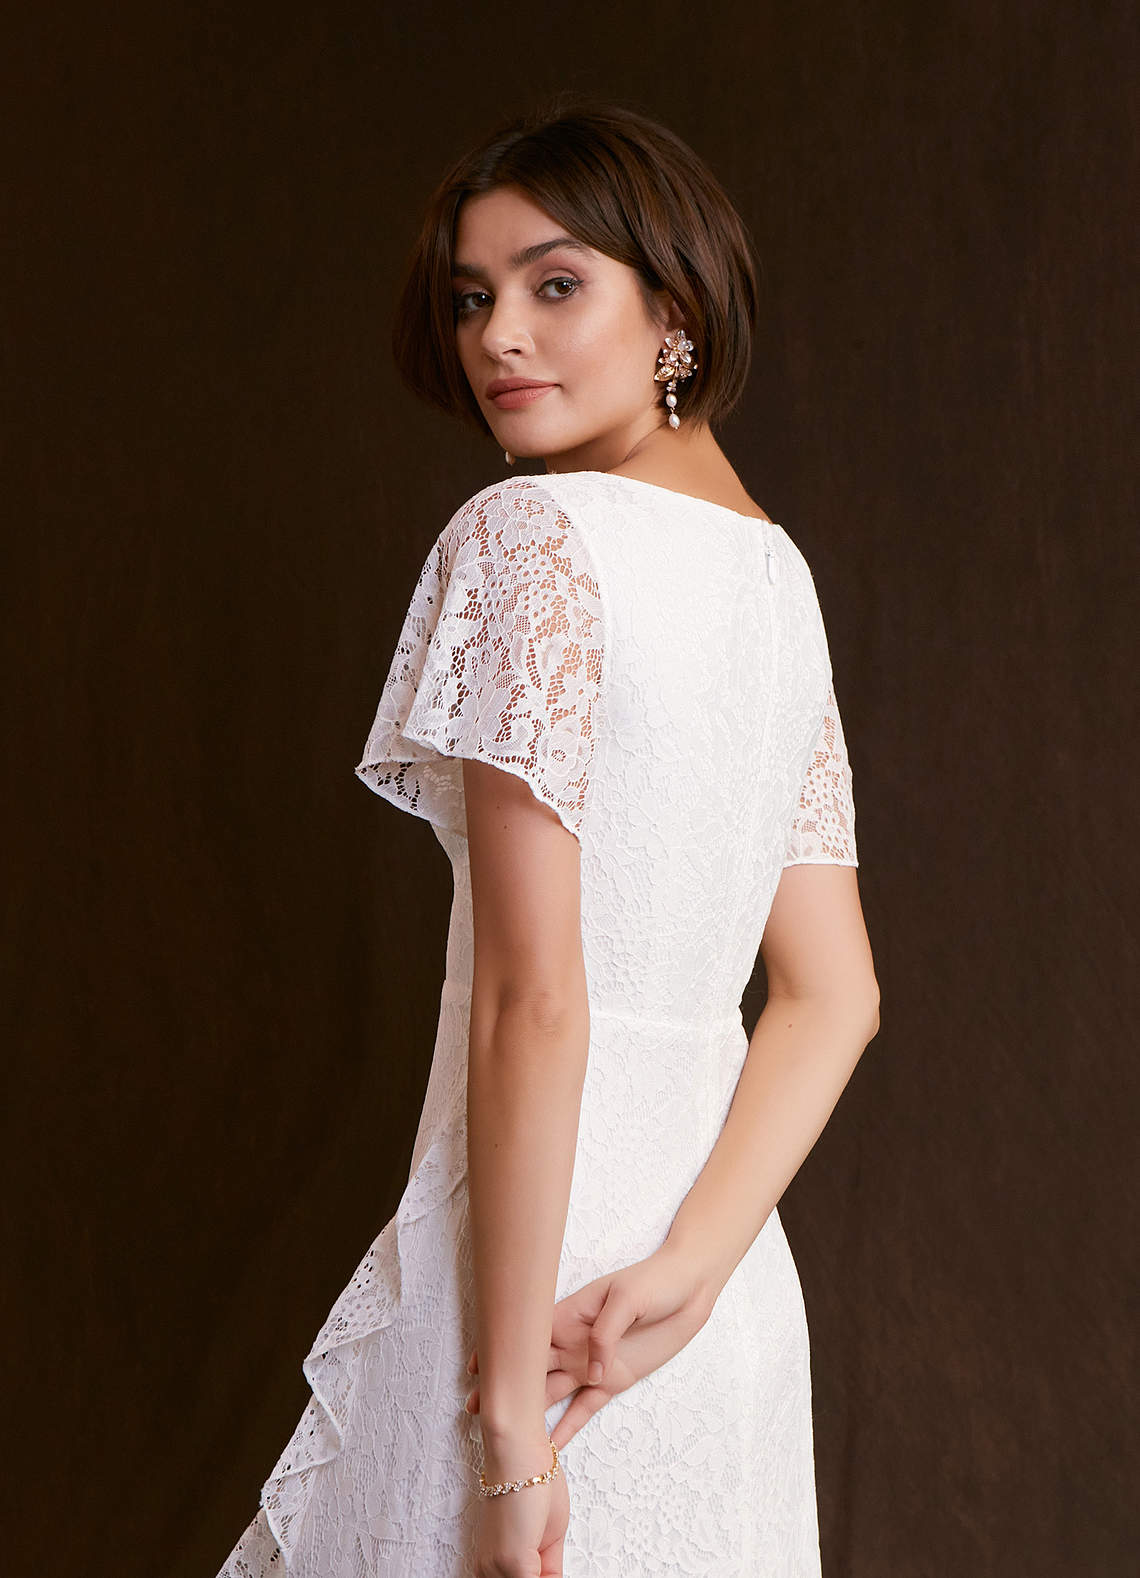 Azazie Lanei Wedding Dresses A-Line V-Neck Lace Floor-Length Dress image1